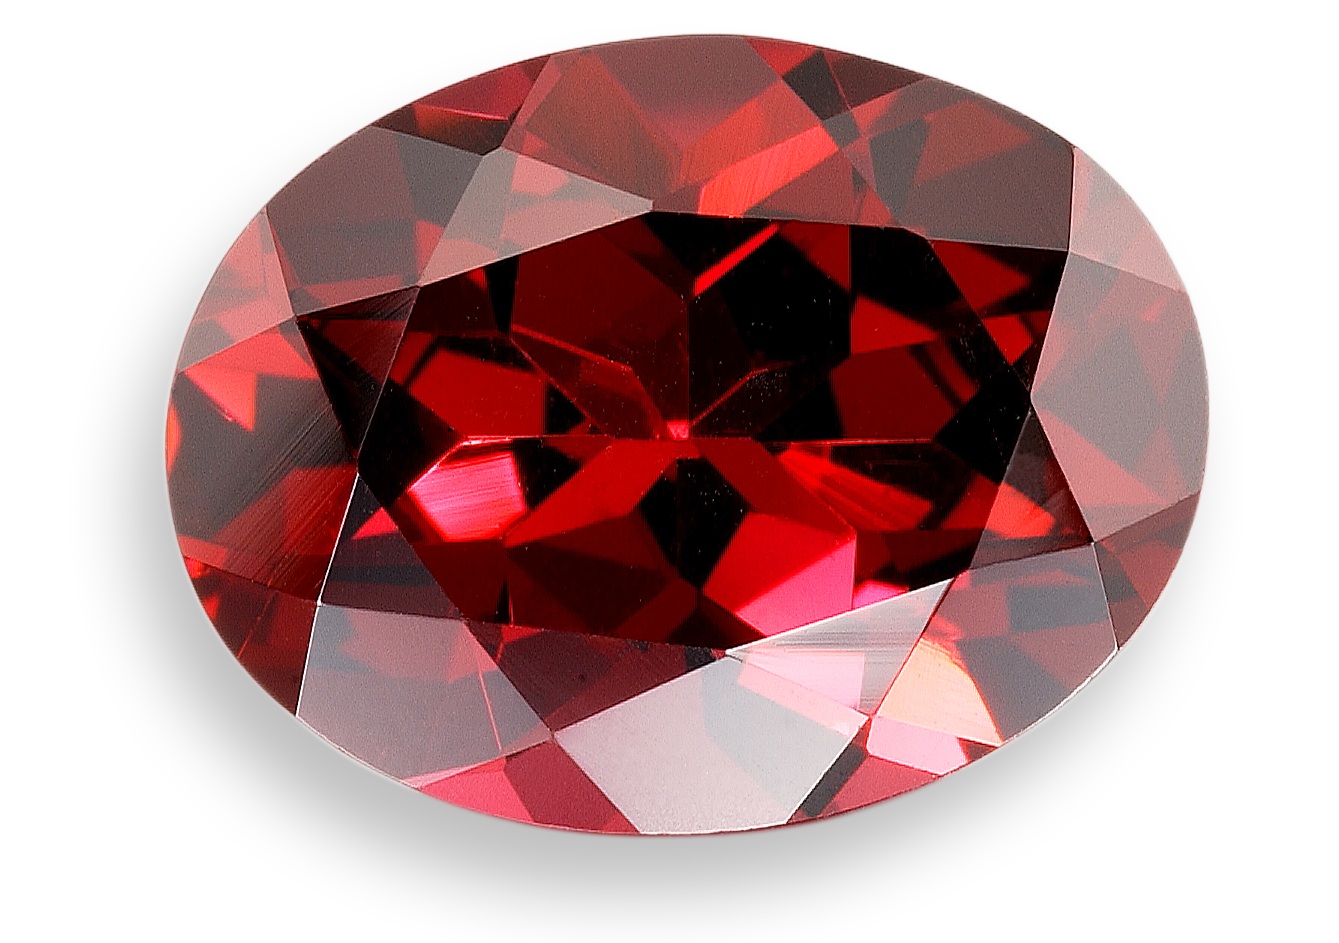 Oval-shaped garnet gemstone